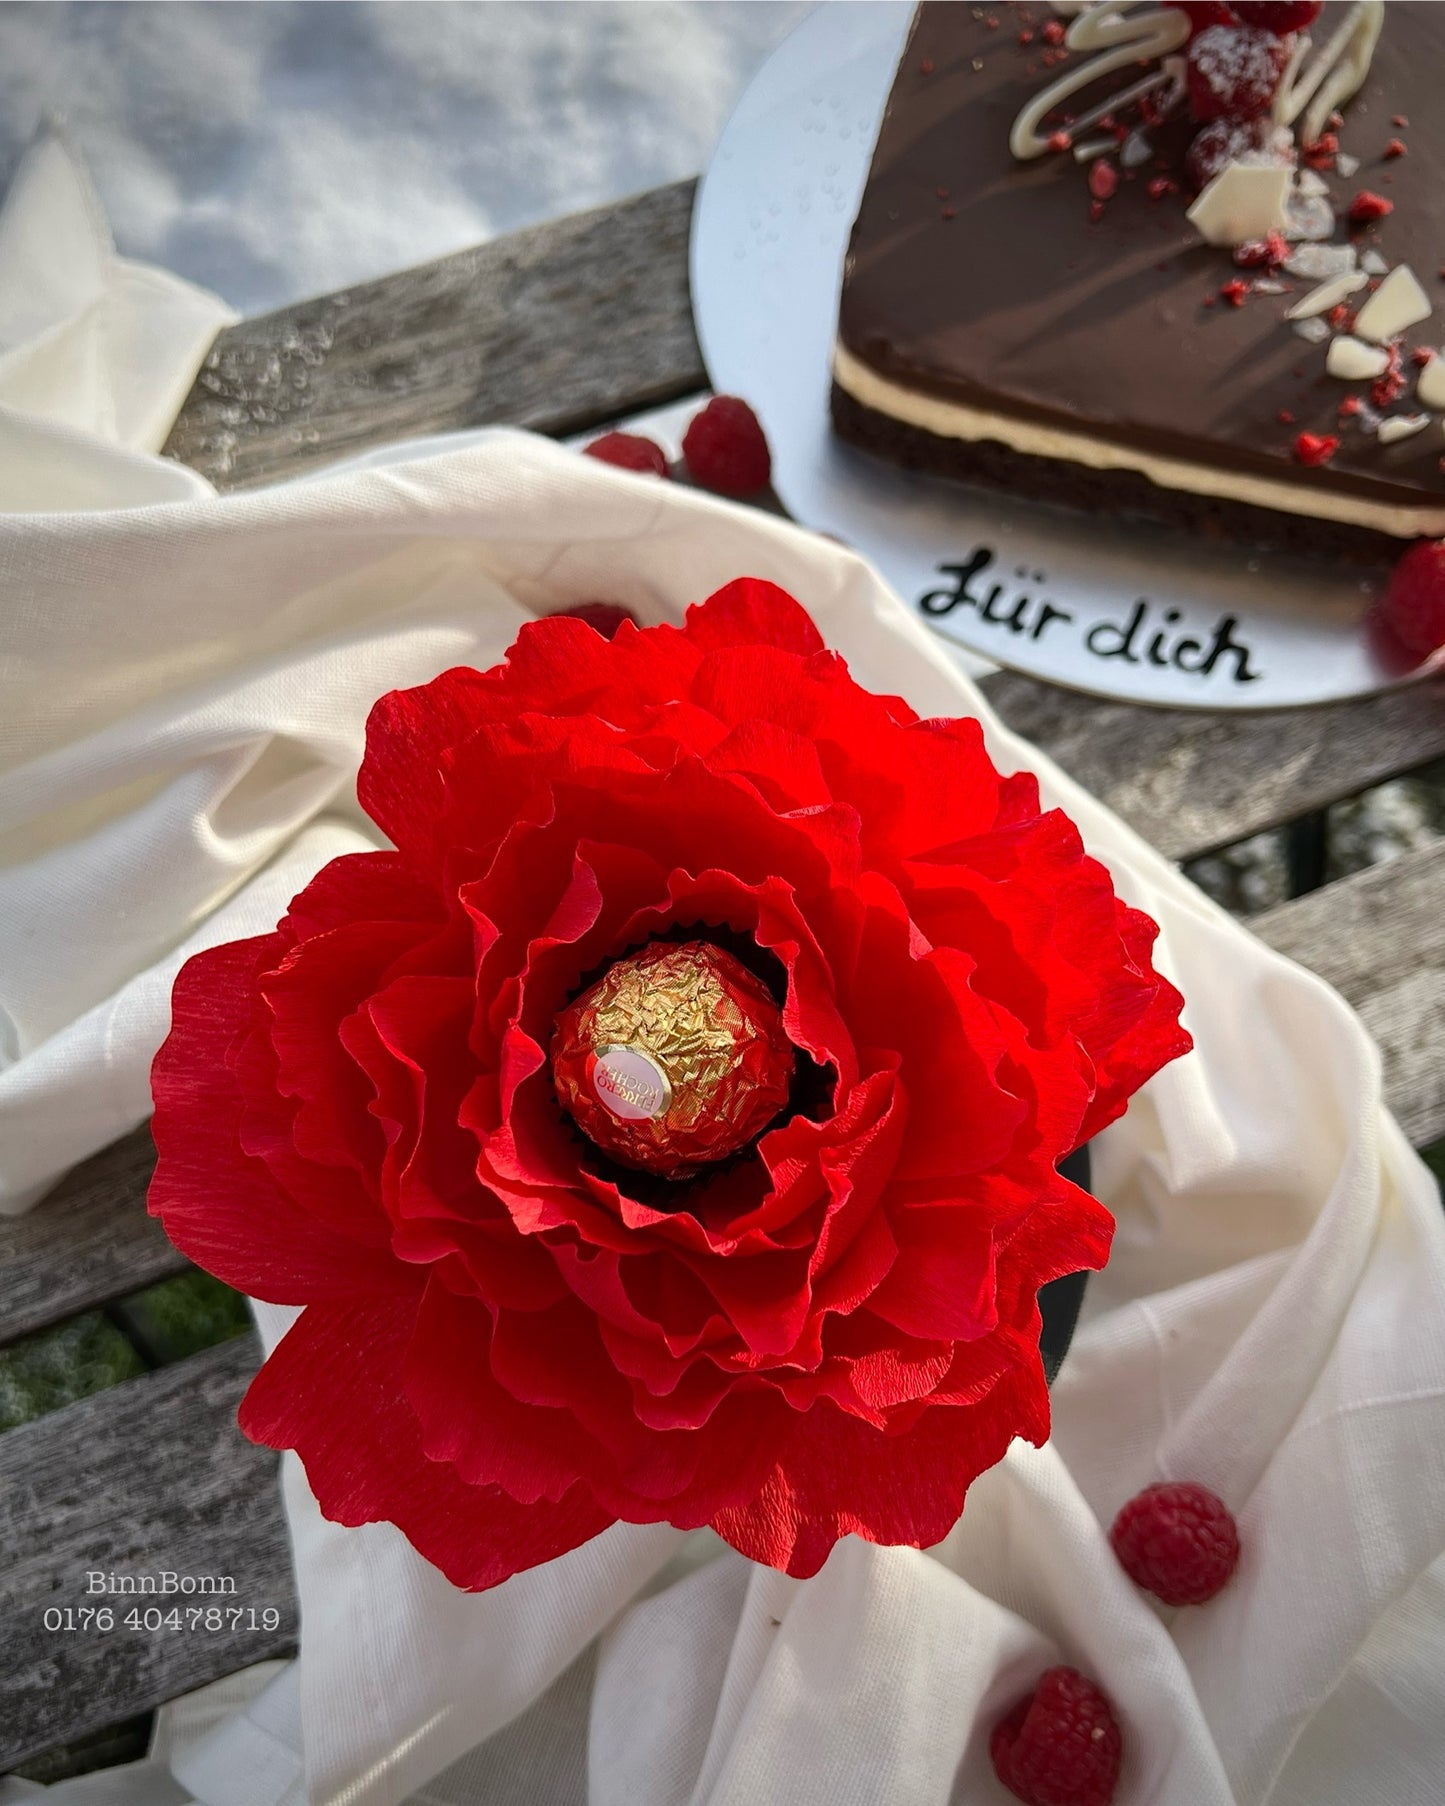 Einzigartiges Geschenk zum Valentinstag Muttertag Rosebox mit Ferrero Rocher